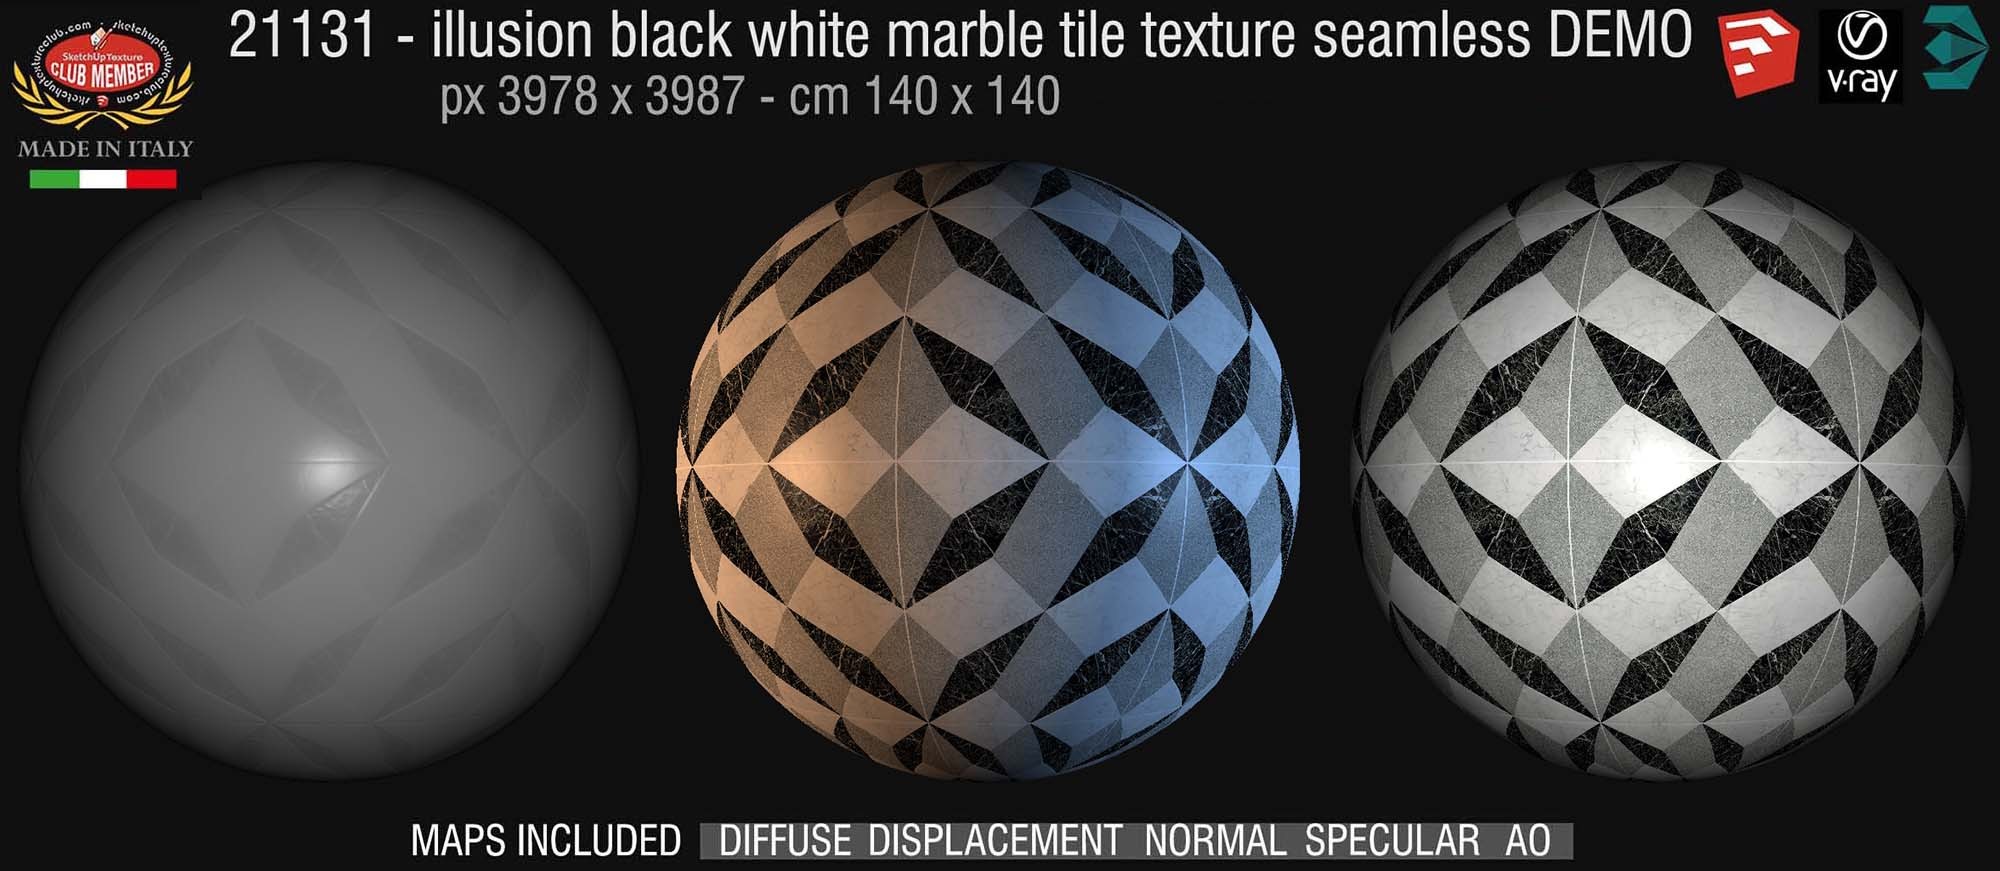 21131 Illusion black white marble floor tile texture seamless + maps DEMO